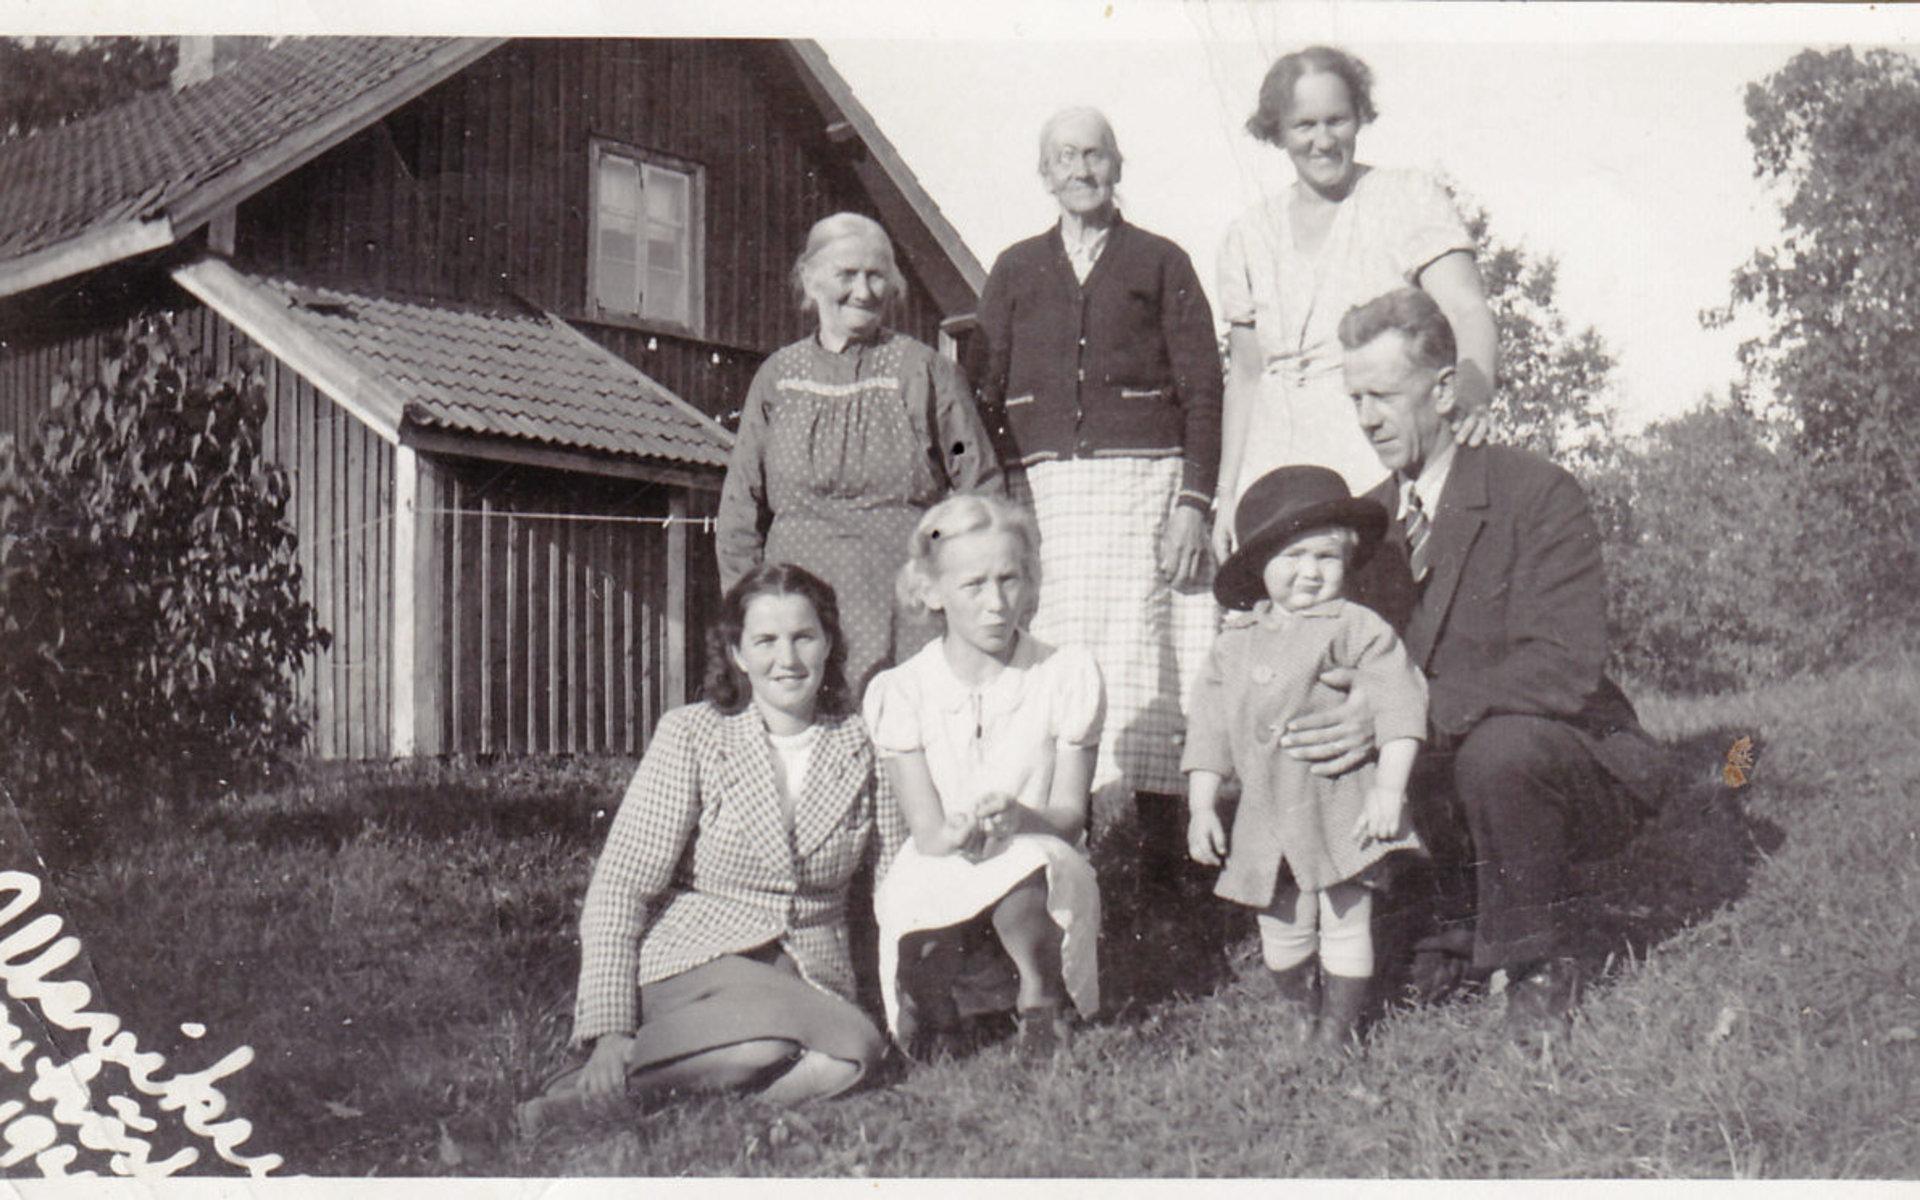 Från Stens album. Matilda i mitten med en syster till vänster och kanske Agnes Wiik till höger.